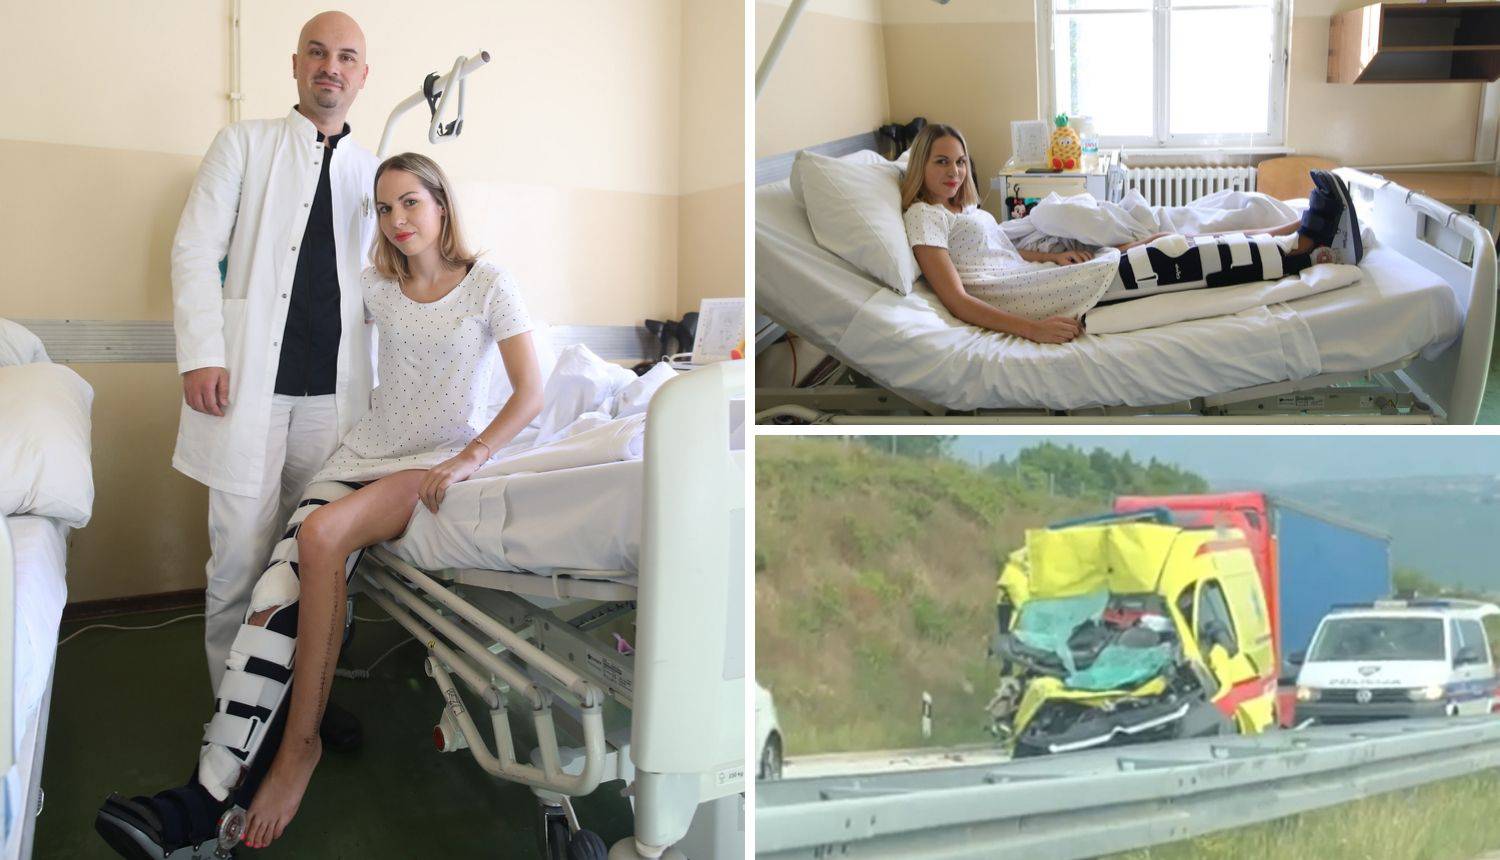 Čudo u Zagrebu: Martini prišili nogu nakon nesreće, opet hoda